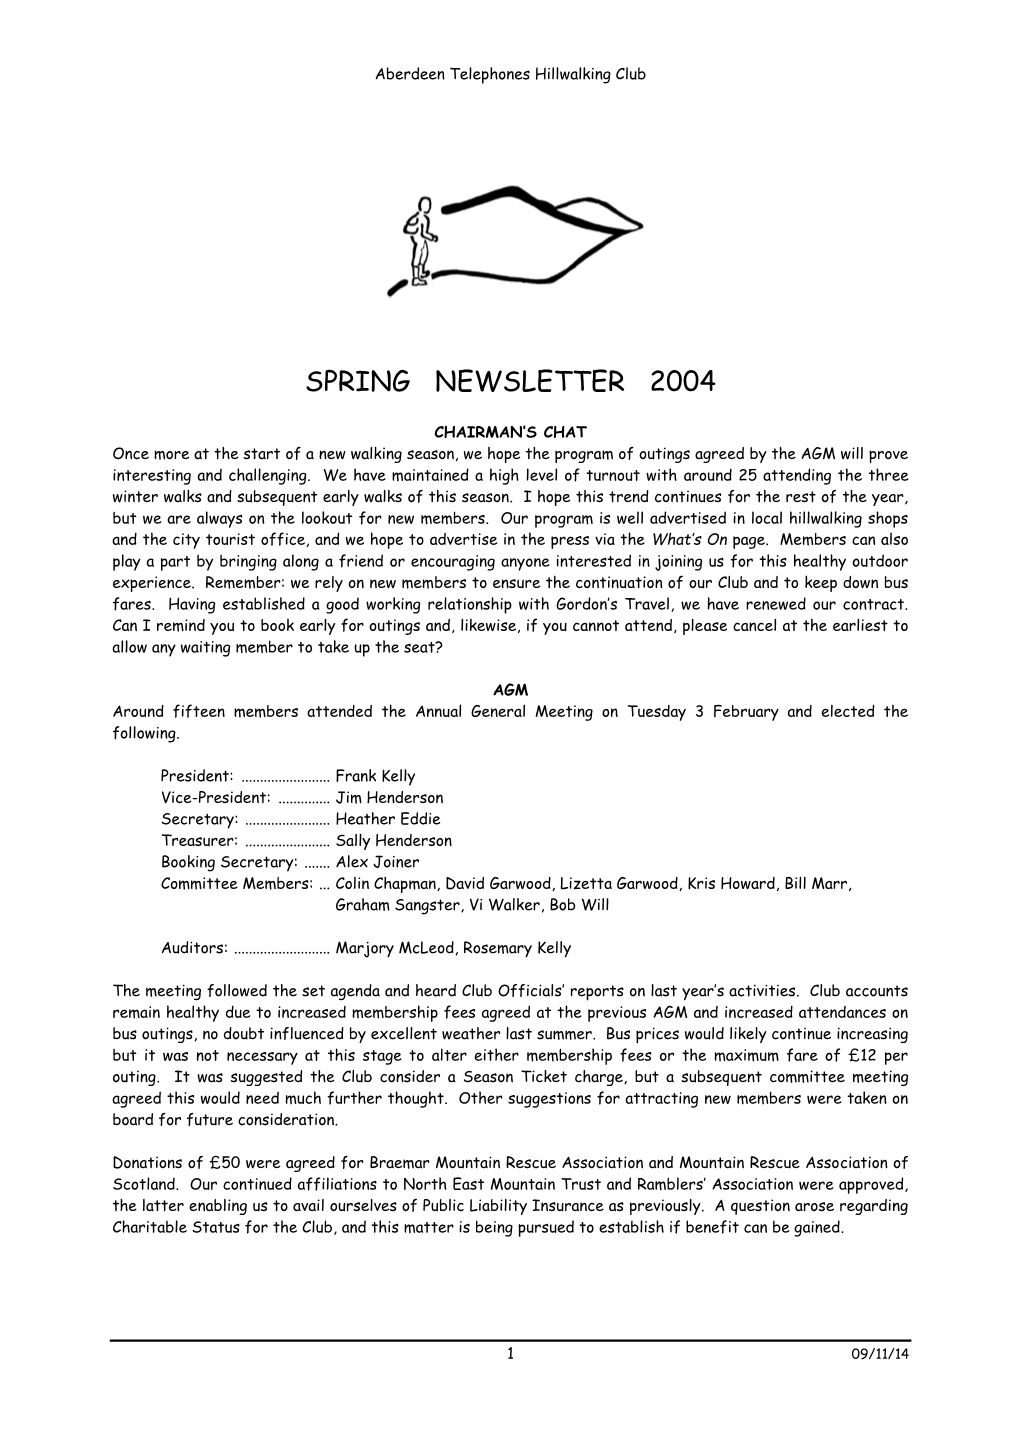 Newsletter Spring 2004